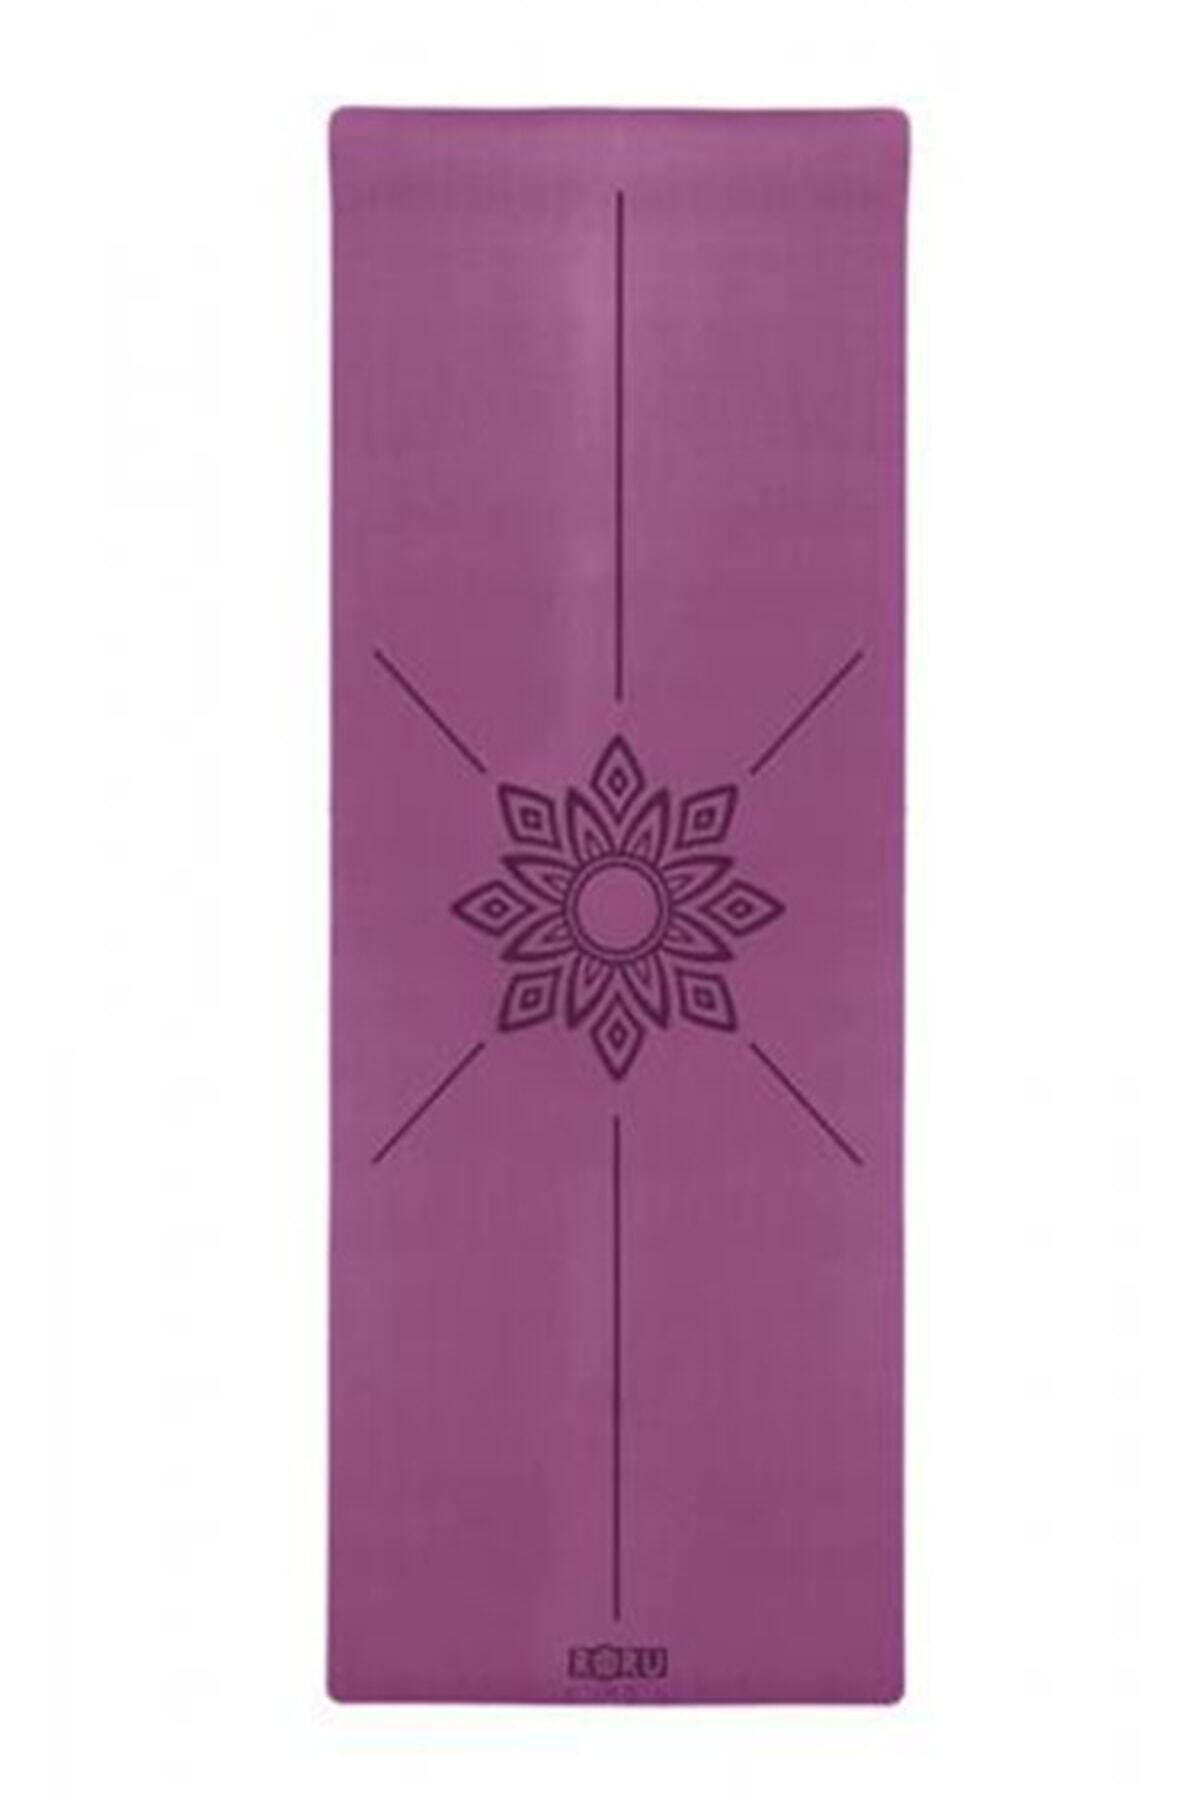 Roru Concept Sun Series Kaydırmaz 5mm Yoga Matı Mor/